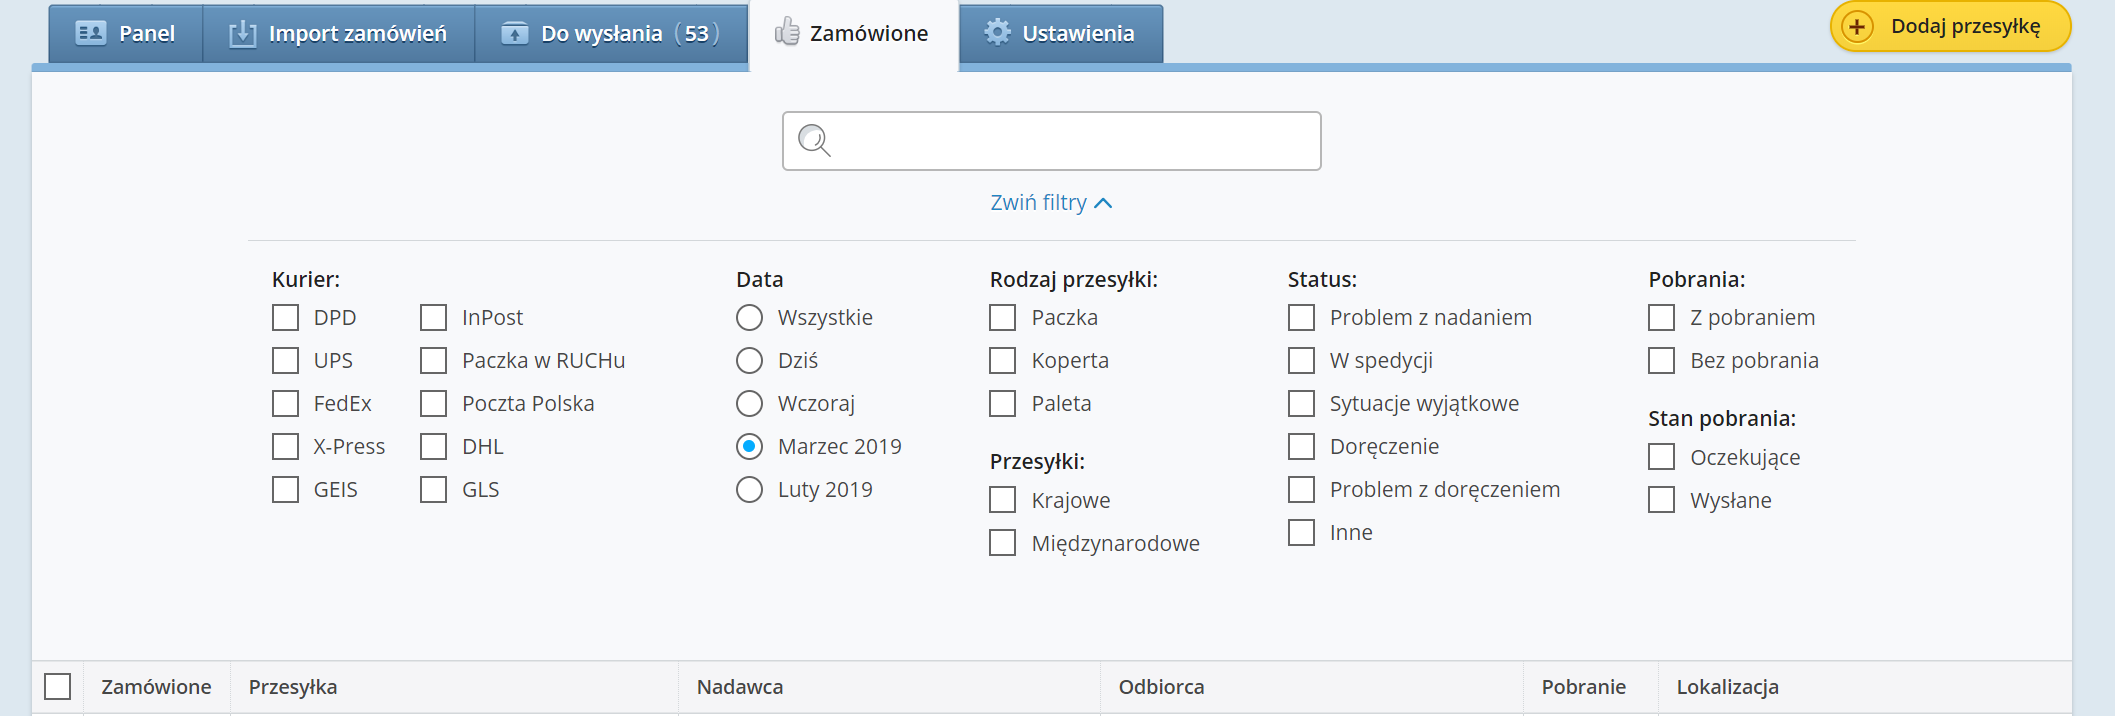 Nowy filtr "Data" na Furgonetka.pl